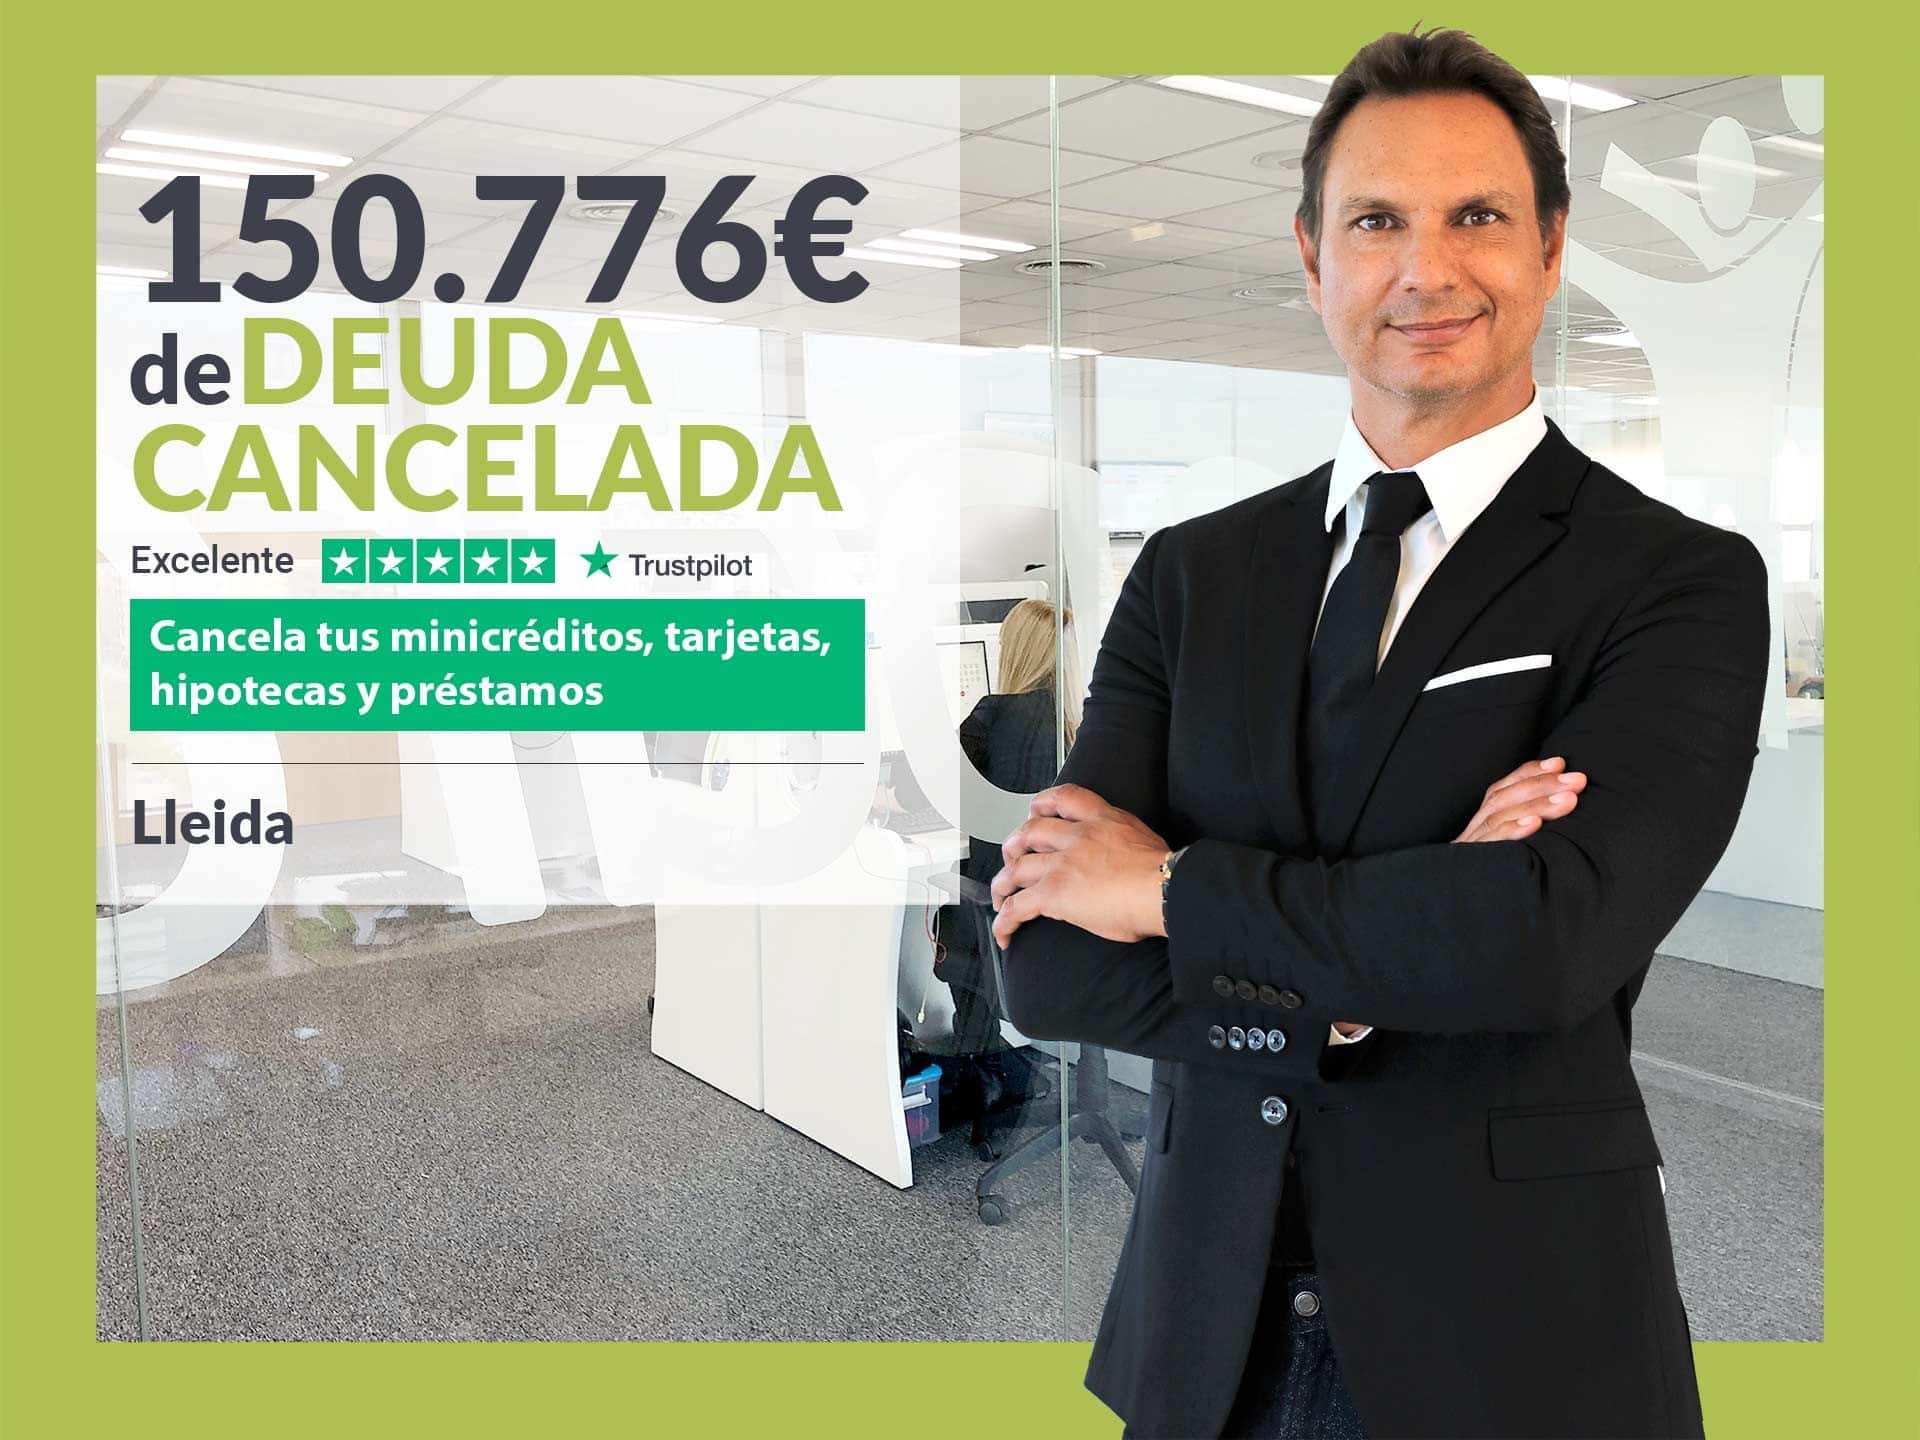 Repara tu Deuda Abogados cancela 150.776? en Lleida (Catalunya) con la Ley de la Segunda Oportunidad